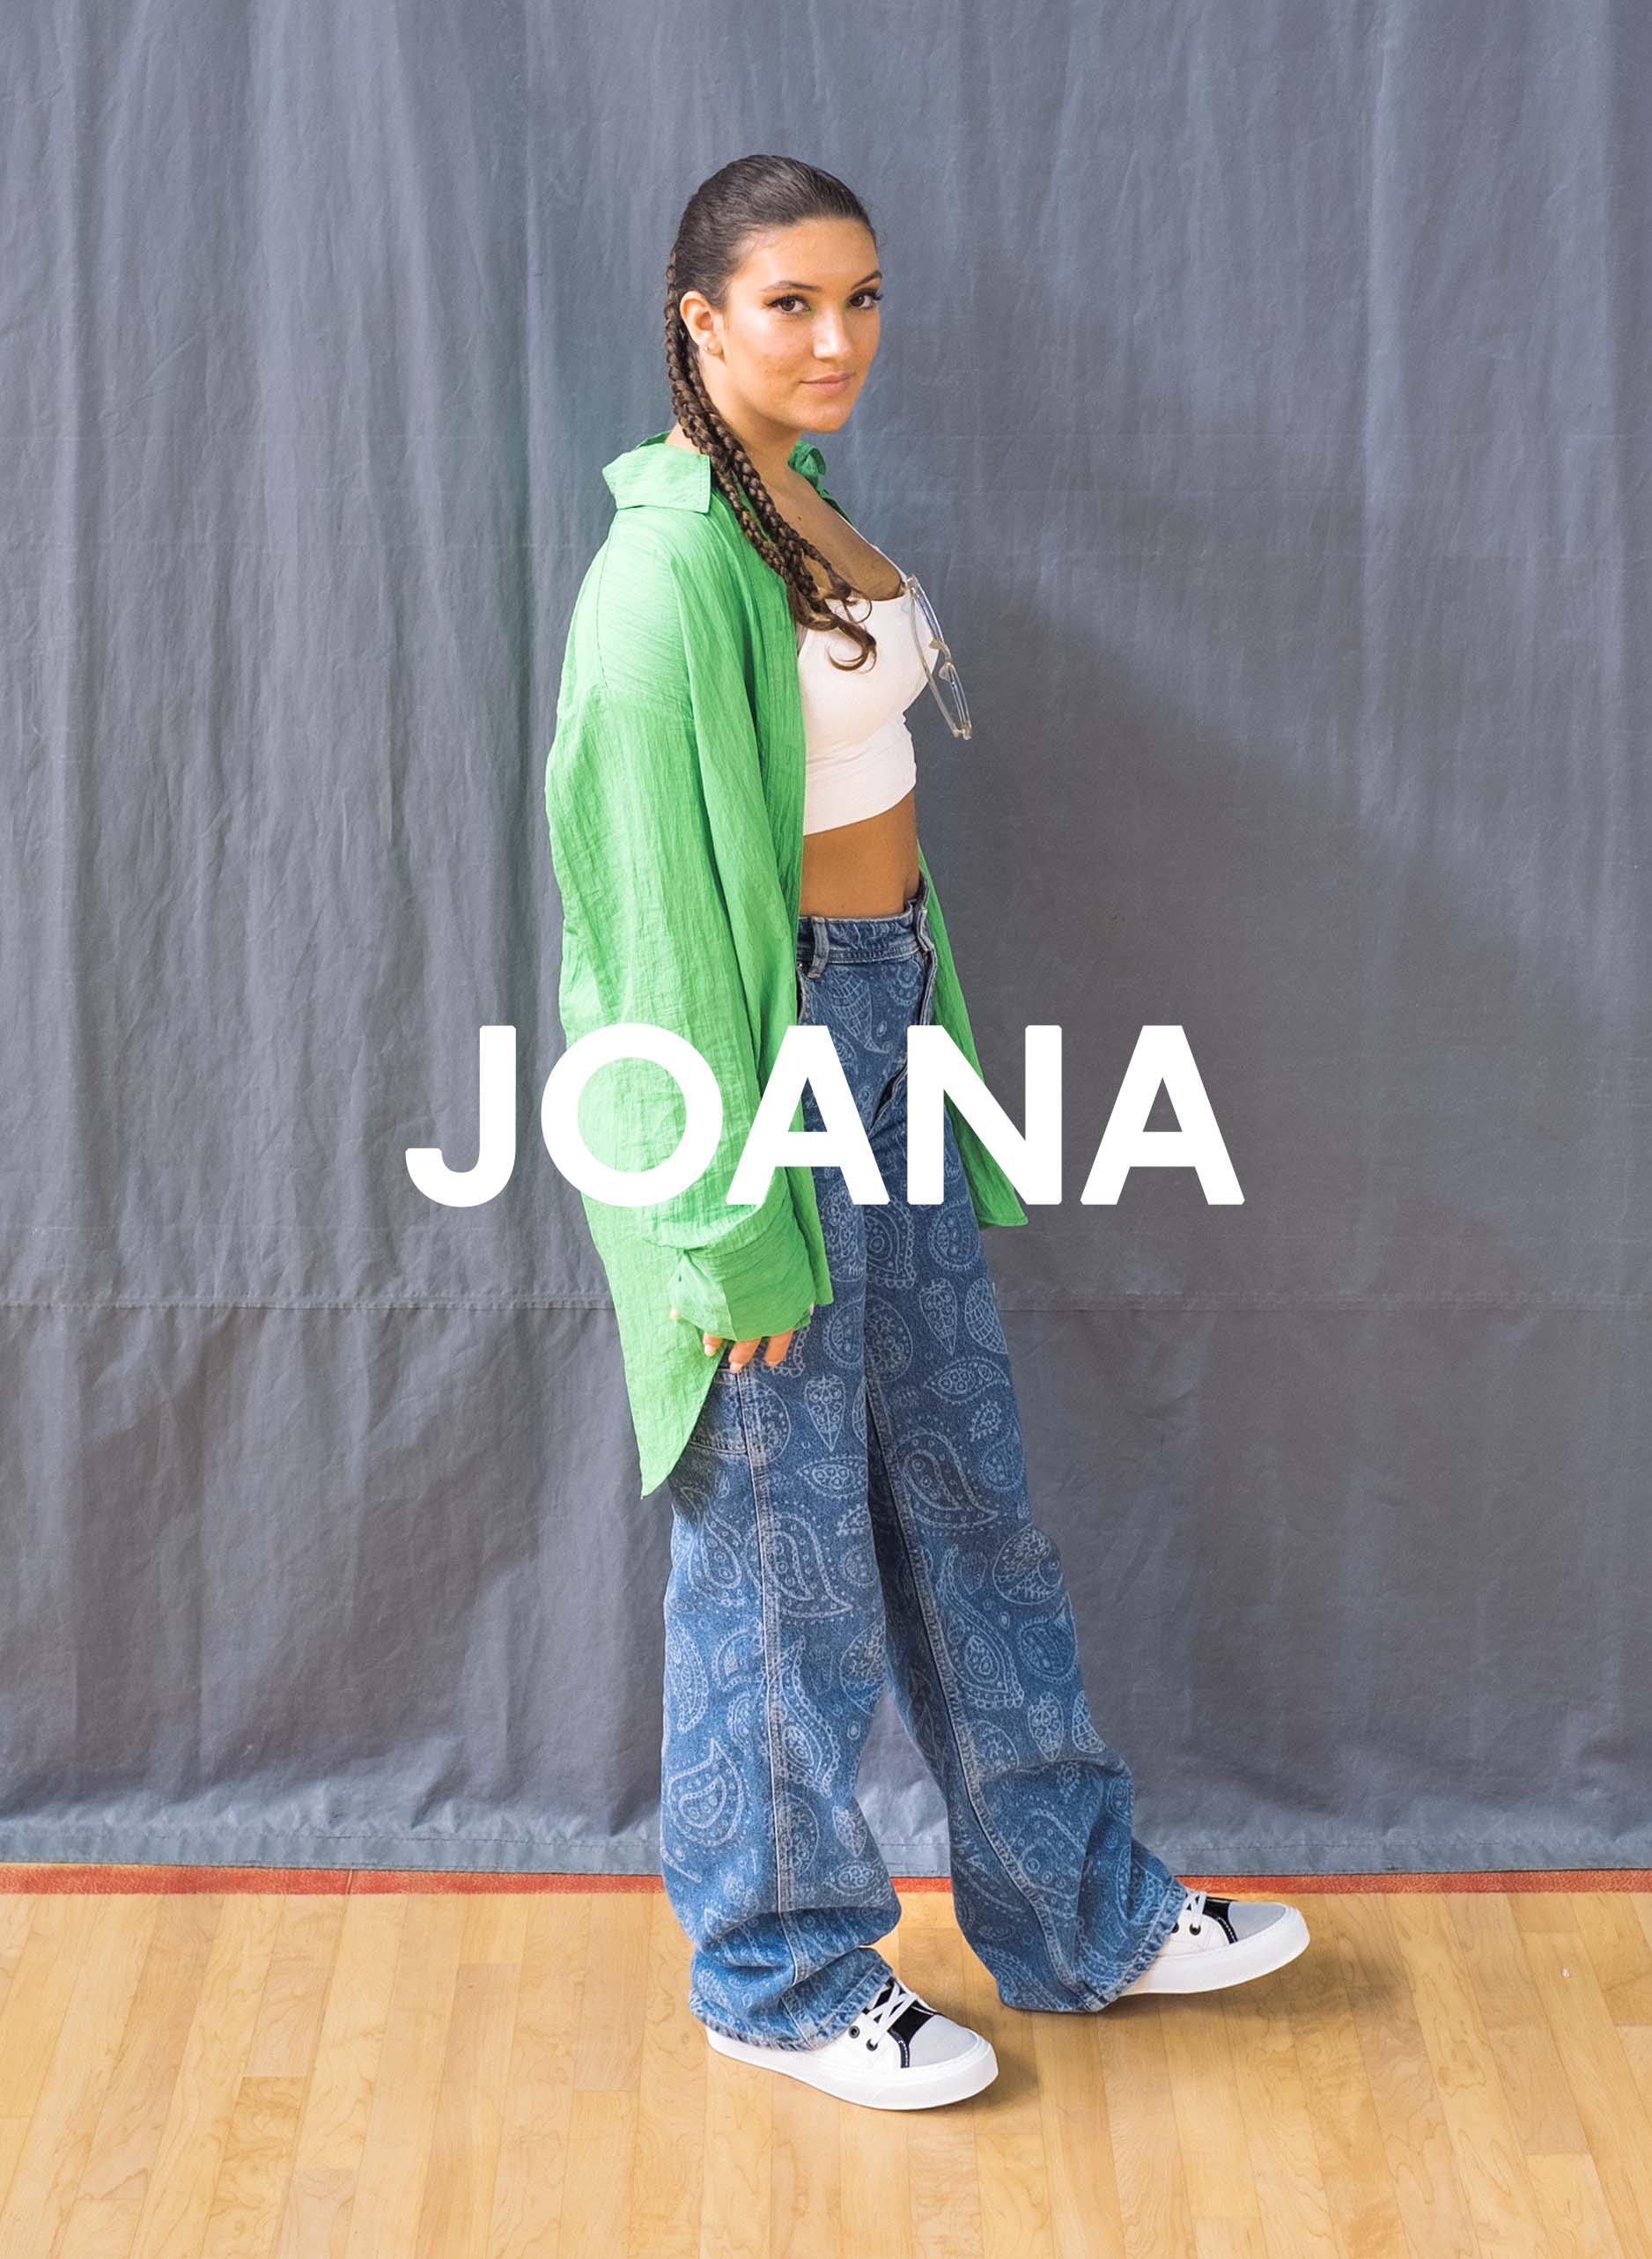 Joana en chemise verte et jeans debout sur un plancher en bois, portant Diverge sneakers, promouvant l’impact social et les chaussures personnalisées à travers le projet Imagine.  